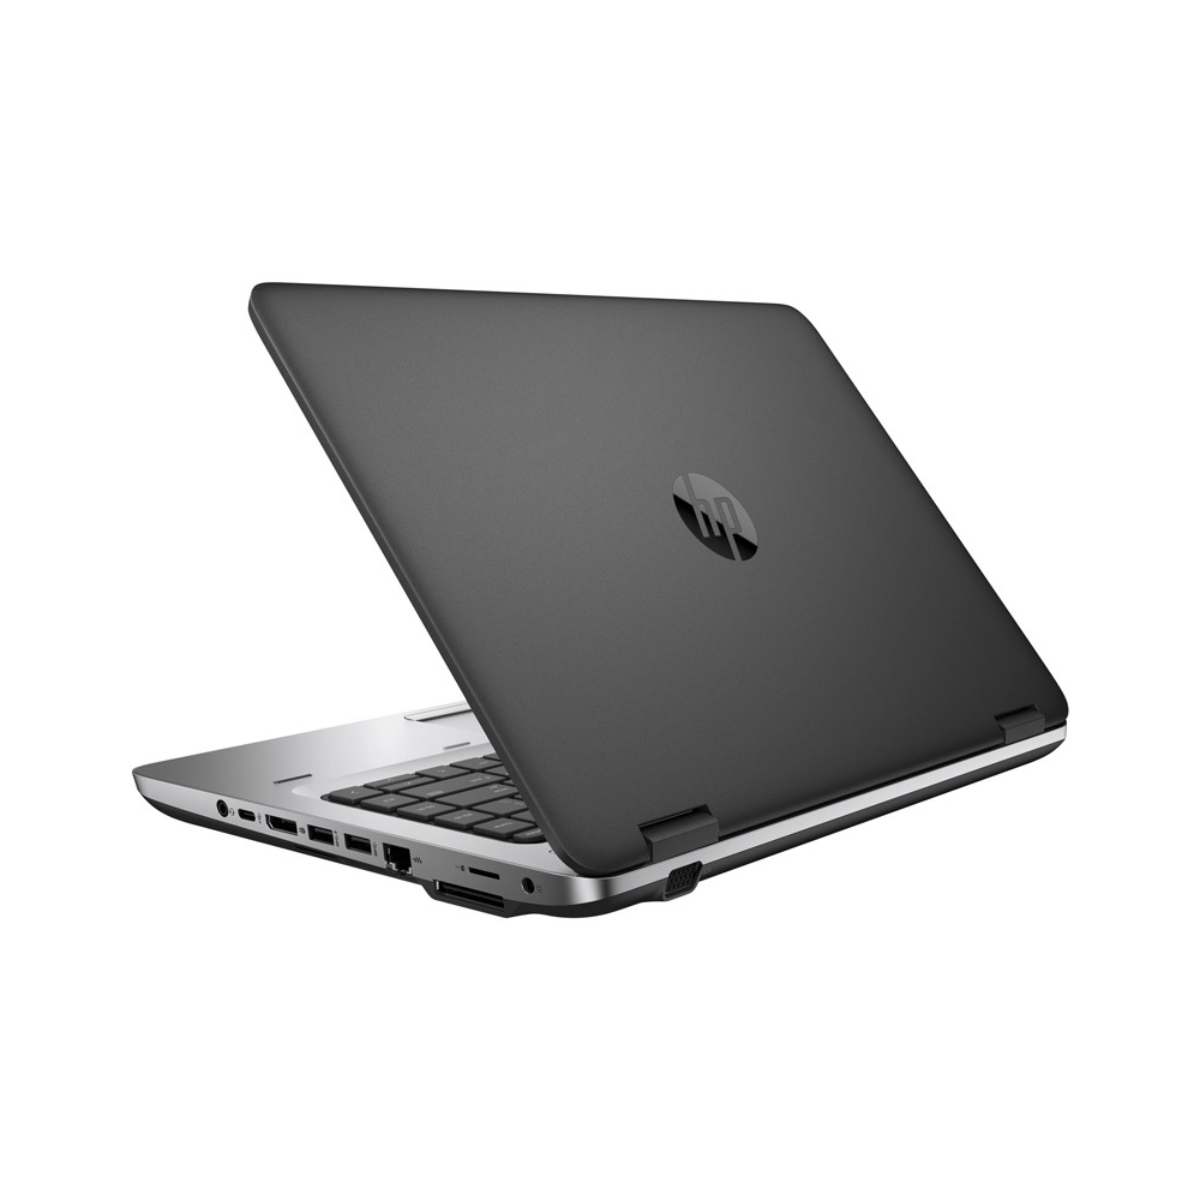 HP ProBook 645 G1 A8 (4ta generación) 8GB RAM 256GB SSD 14